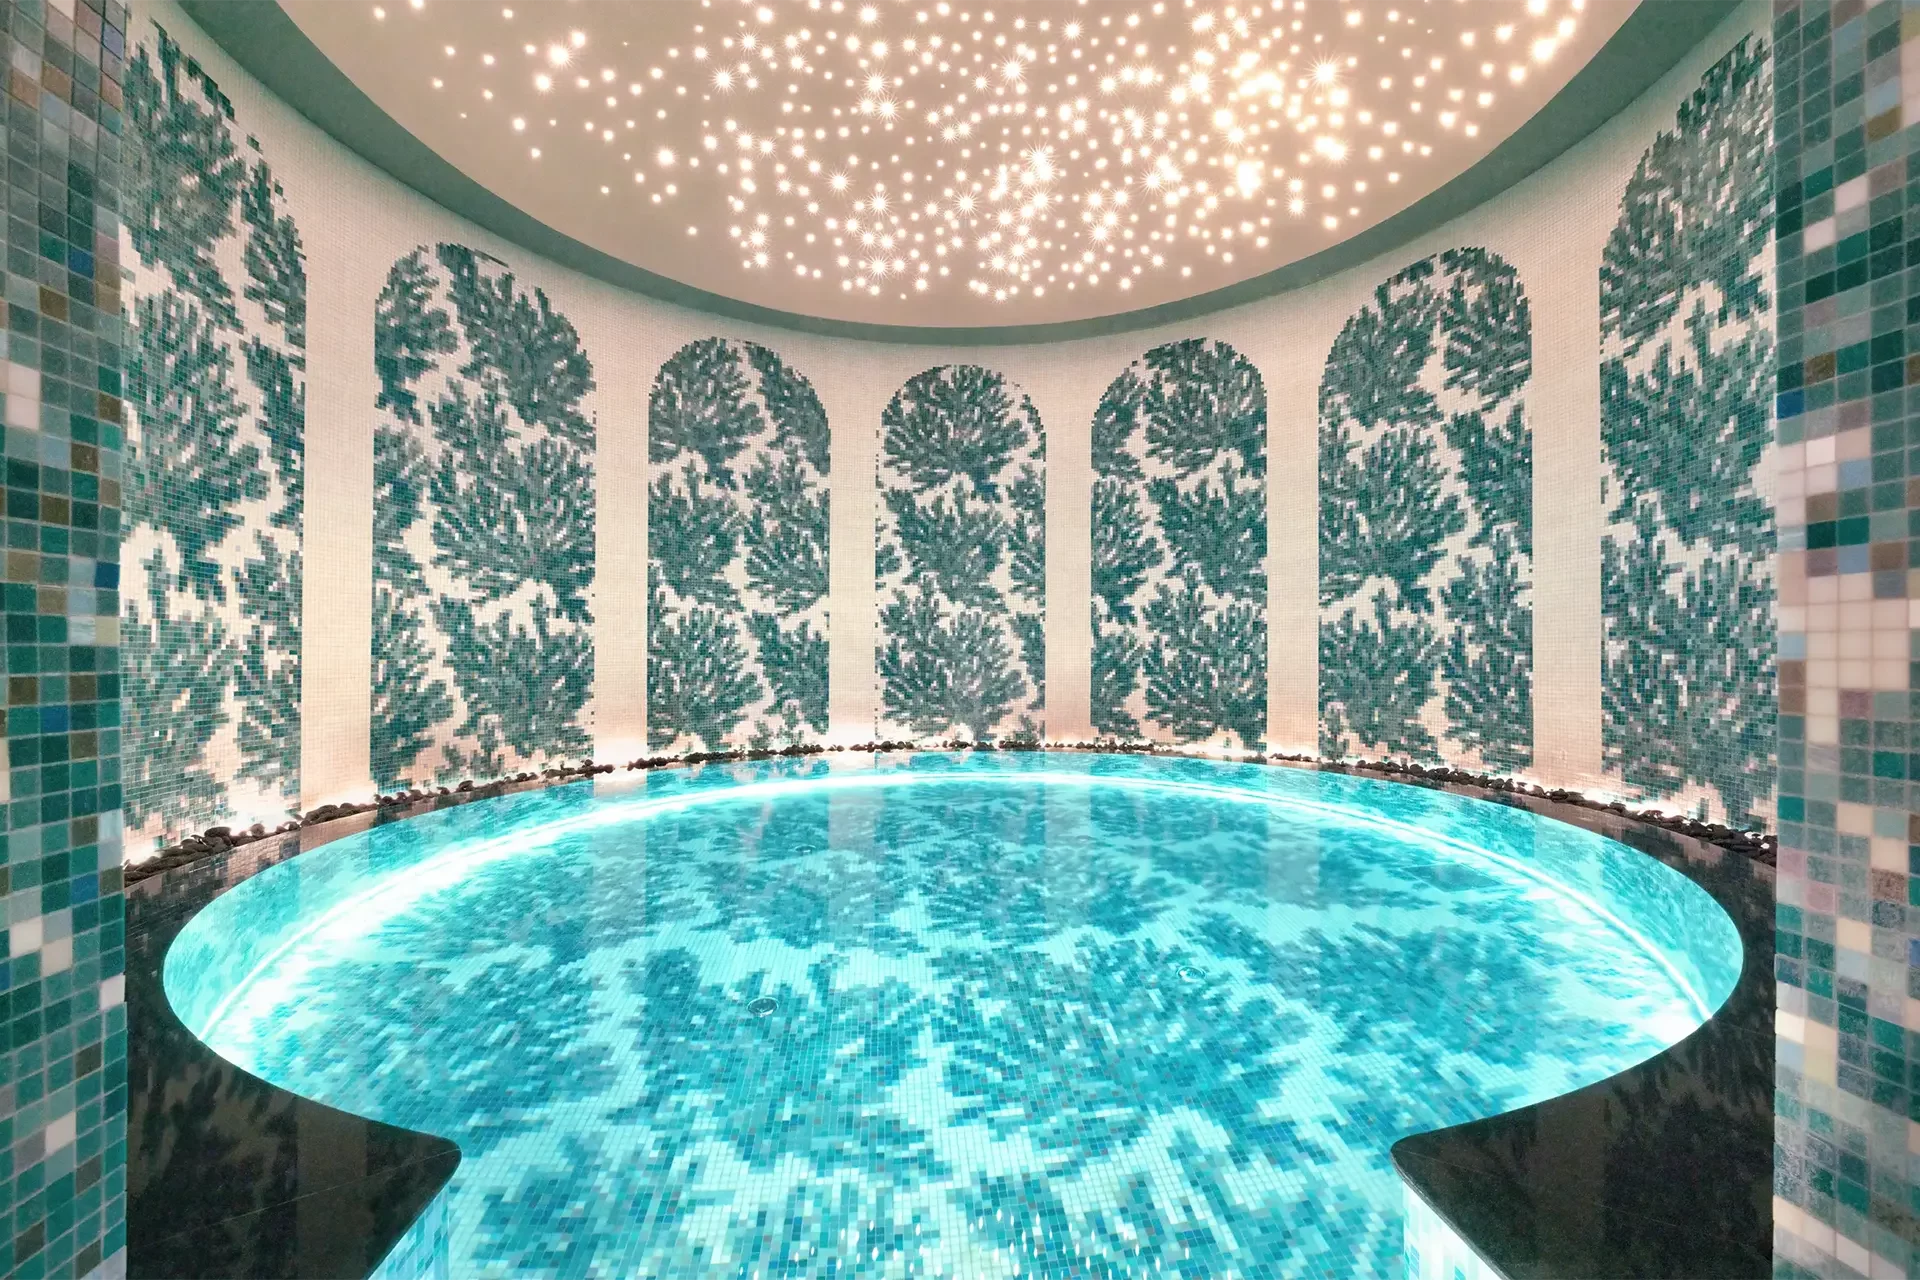 Runder Pool in Raum mit aufwendiger Dekoration